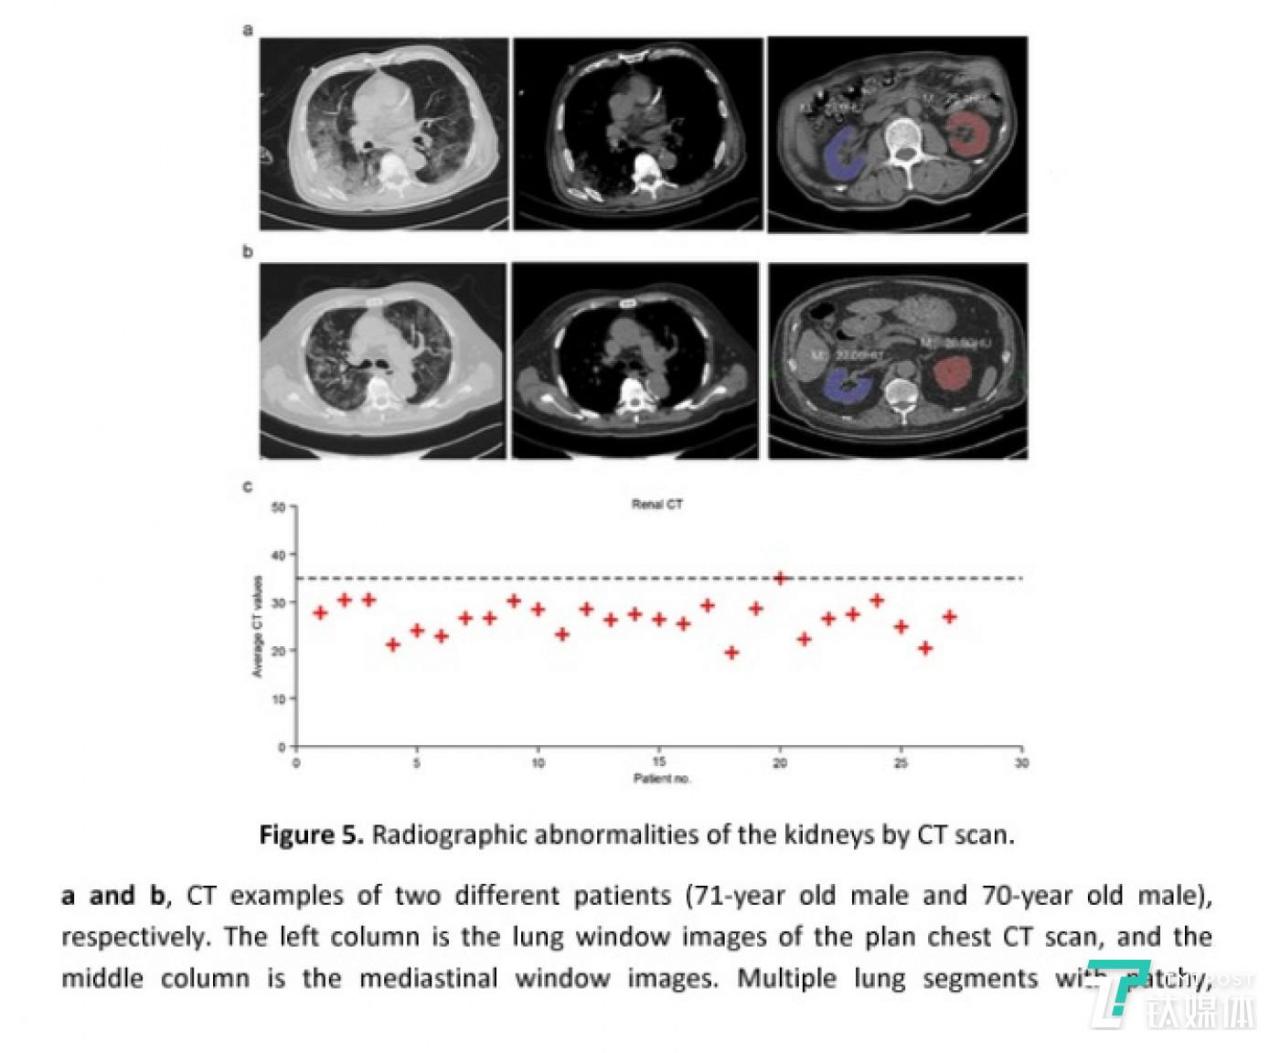 CT 扫描显示的肾脏放射影像异常情况